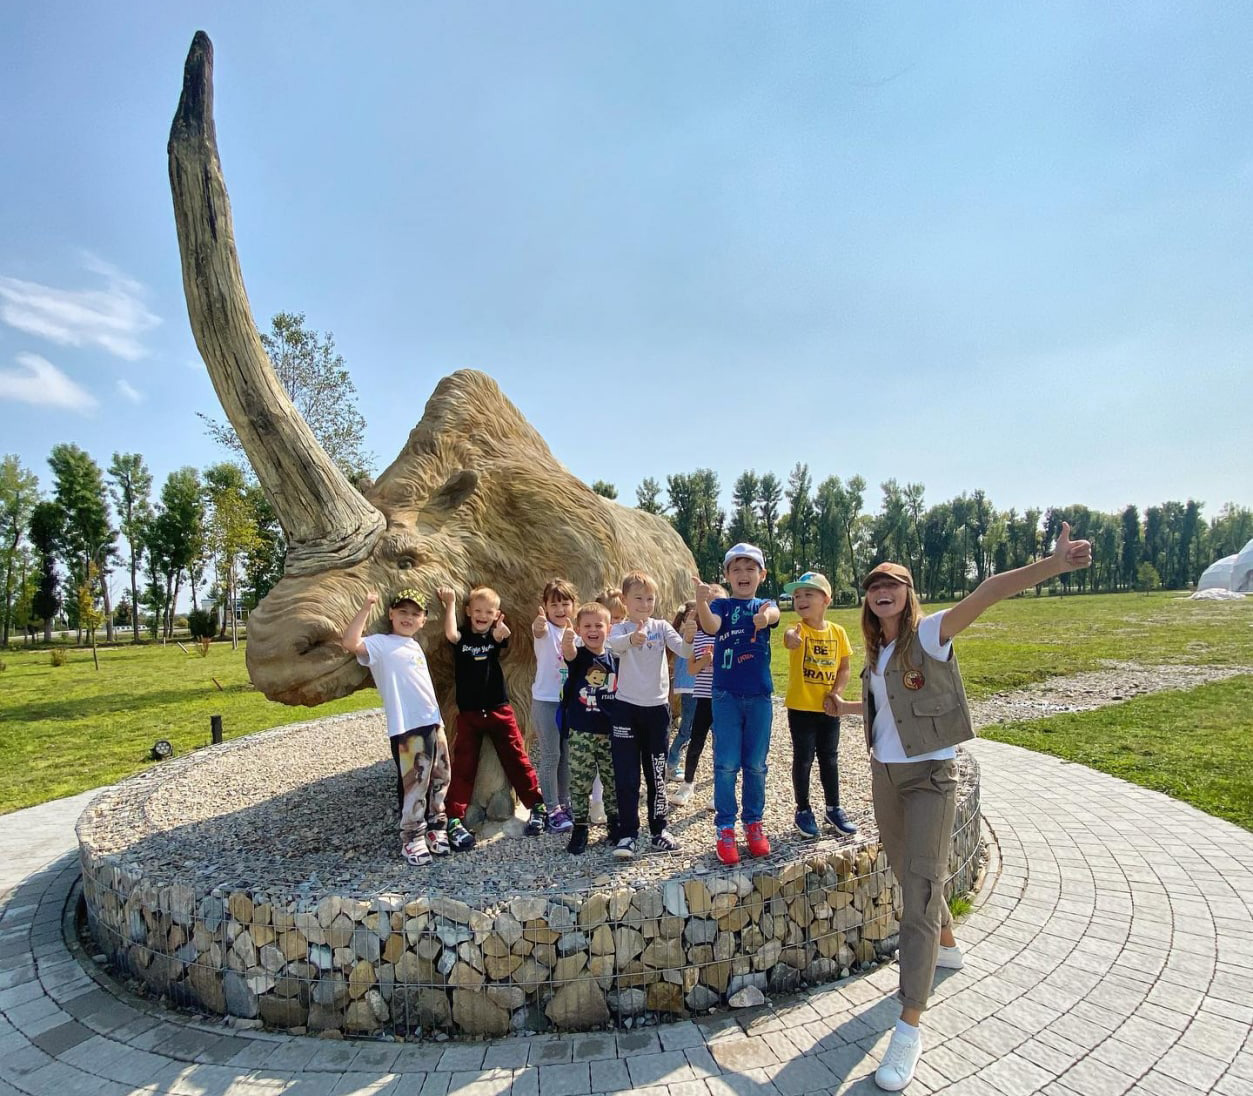 Останки древнего носорога археологи нашли неподалеку села, а в парке воссоздали его в скульптуре. Фото: facebook.com/parkzemli 